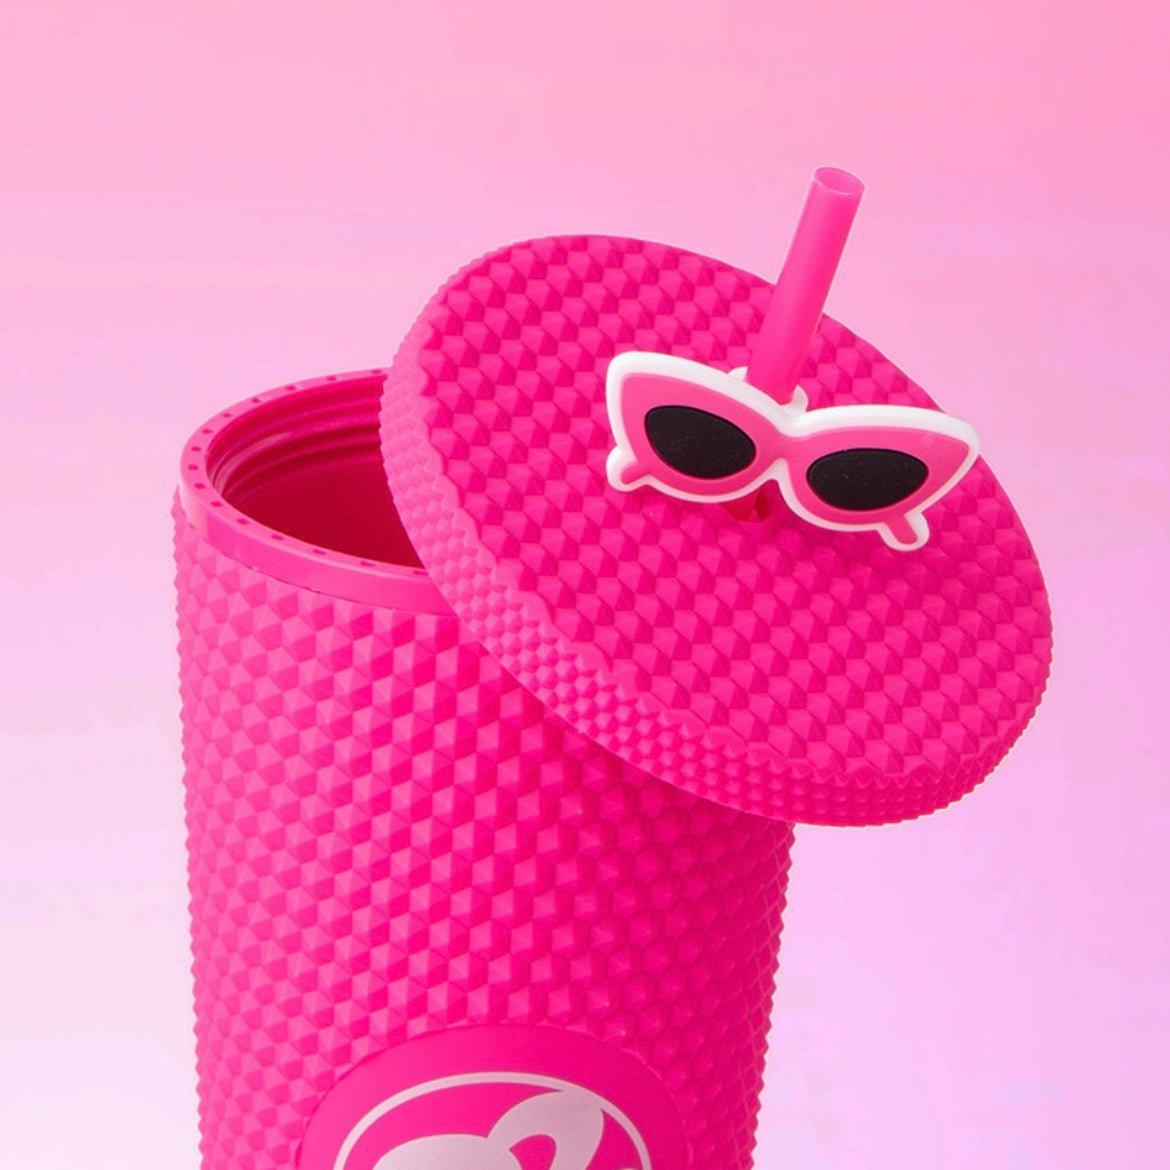 Miniso x Barbie 700ml/24oz Studded Cup - Ann Ann Starbucks